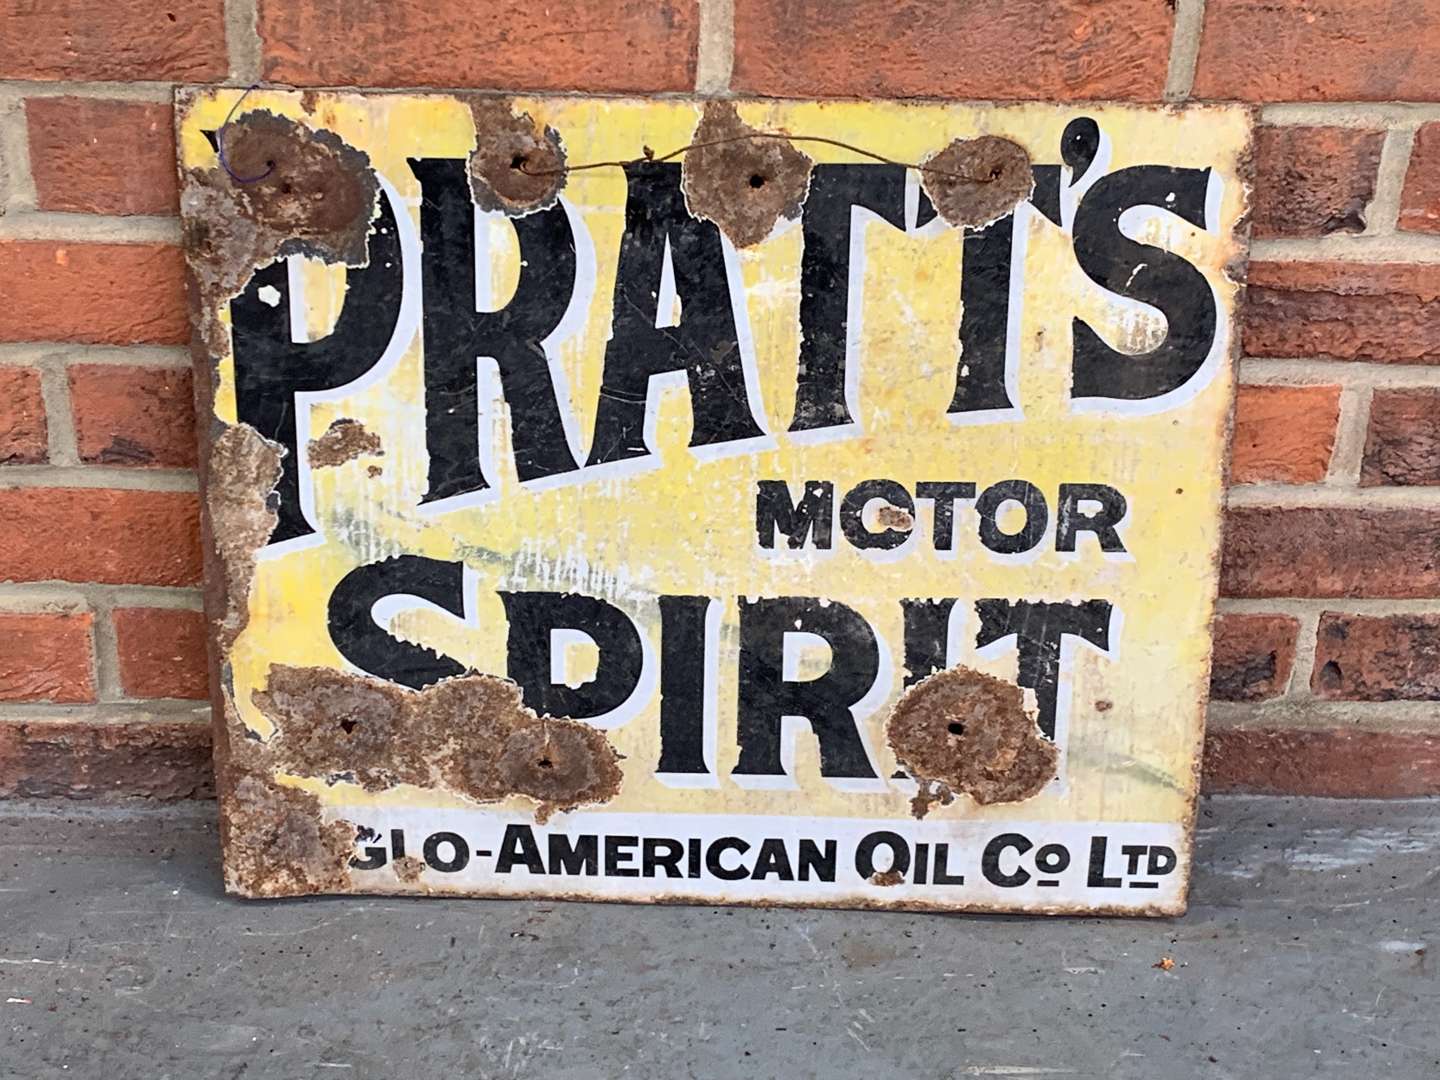 <p>Pratts Motor Spirits Enamel Sign</p>